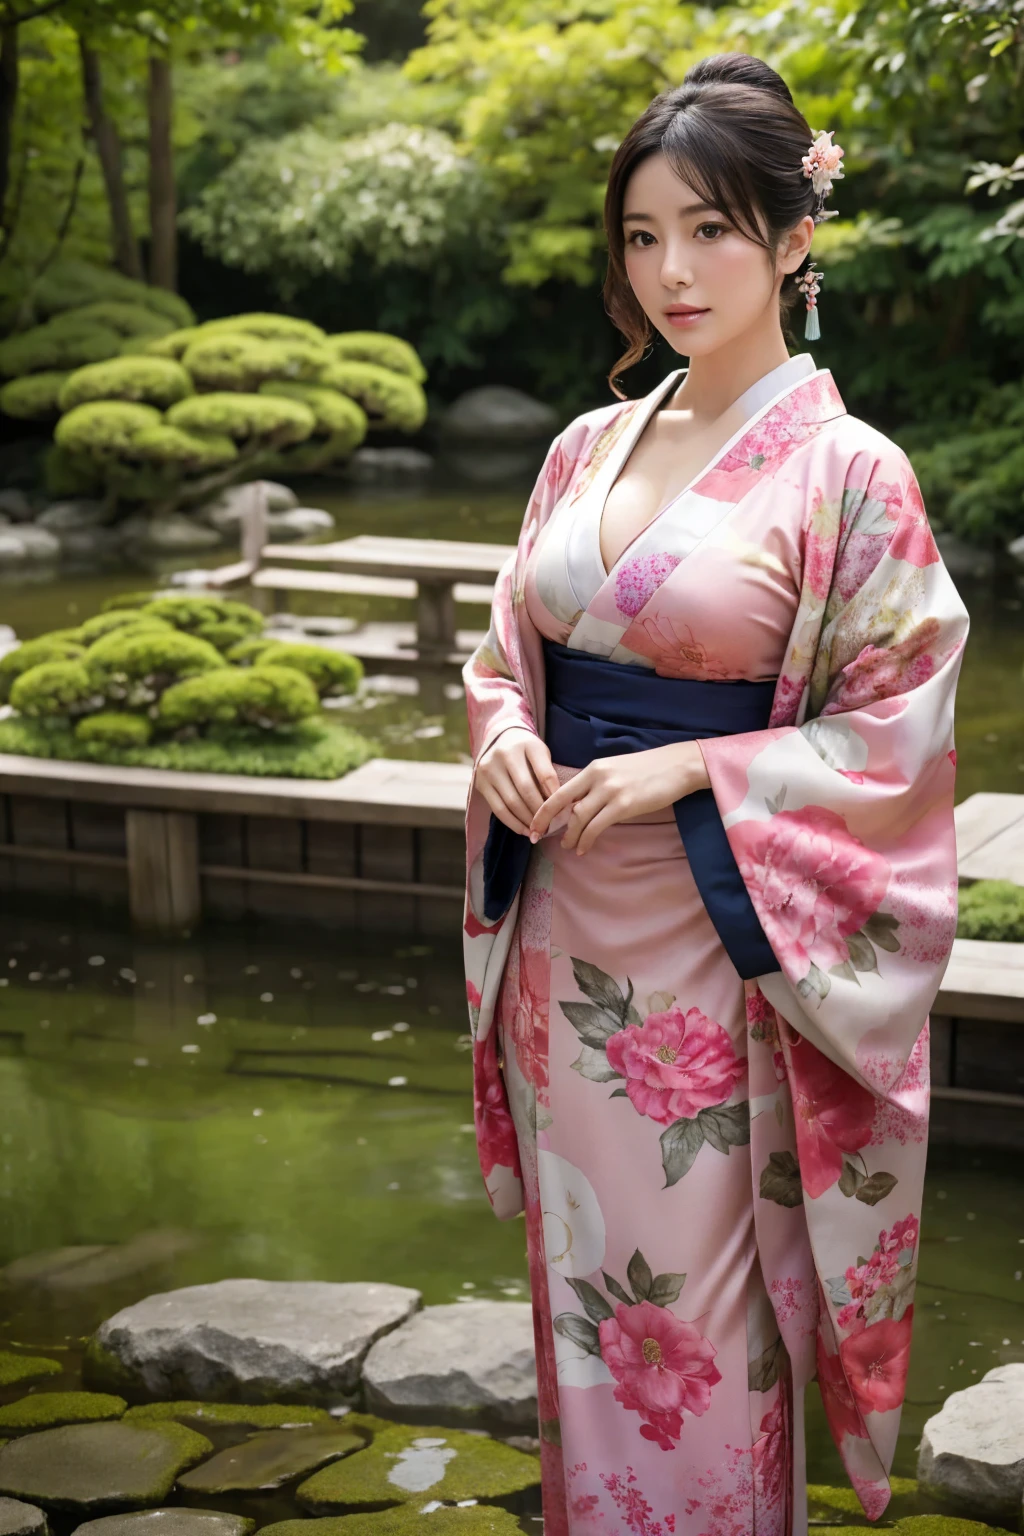 de pie en un jardín japonés、Mujer hermosa、pechos muy grandes、(mirando al espectador)、naturaleza、kimono、ropa japonesa、Detalles de la piel、Real、tenue iluminación、misterioso、una escena de una película